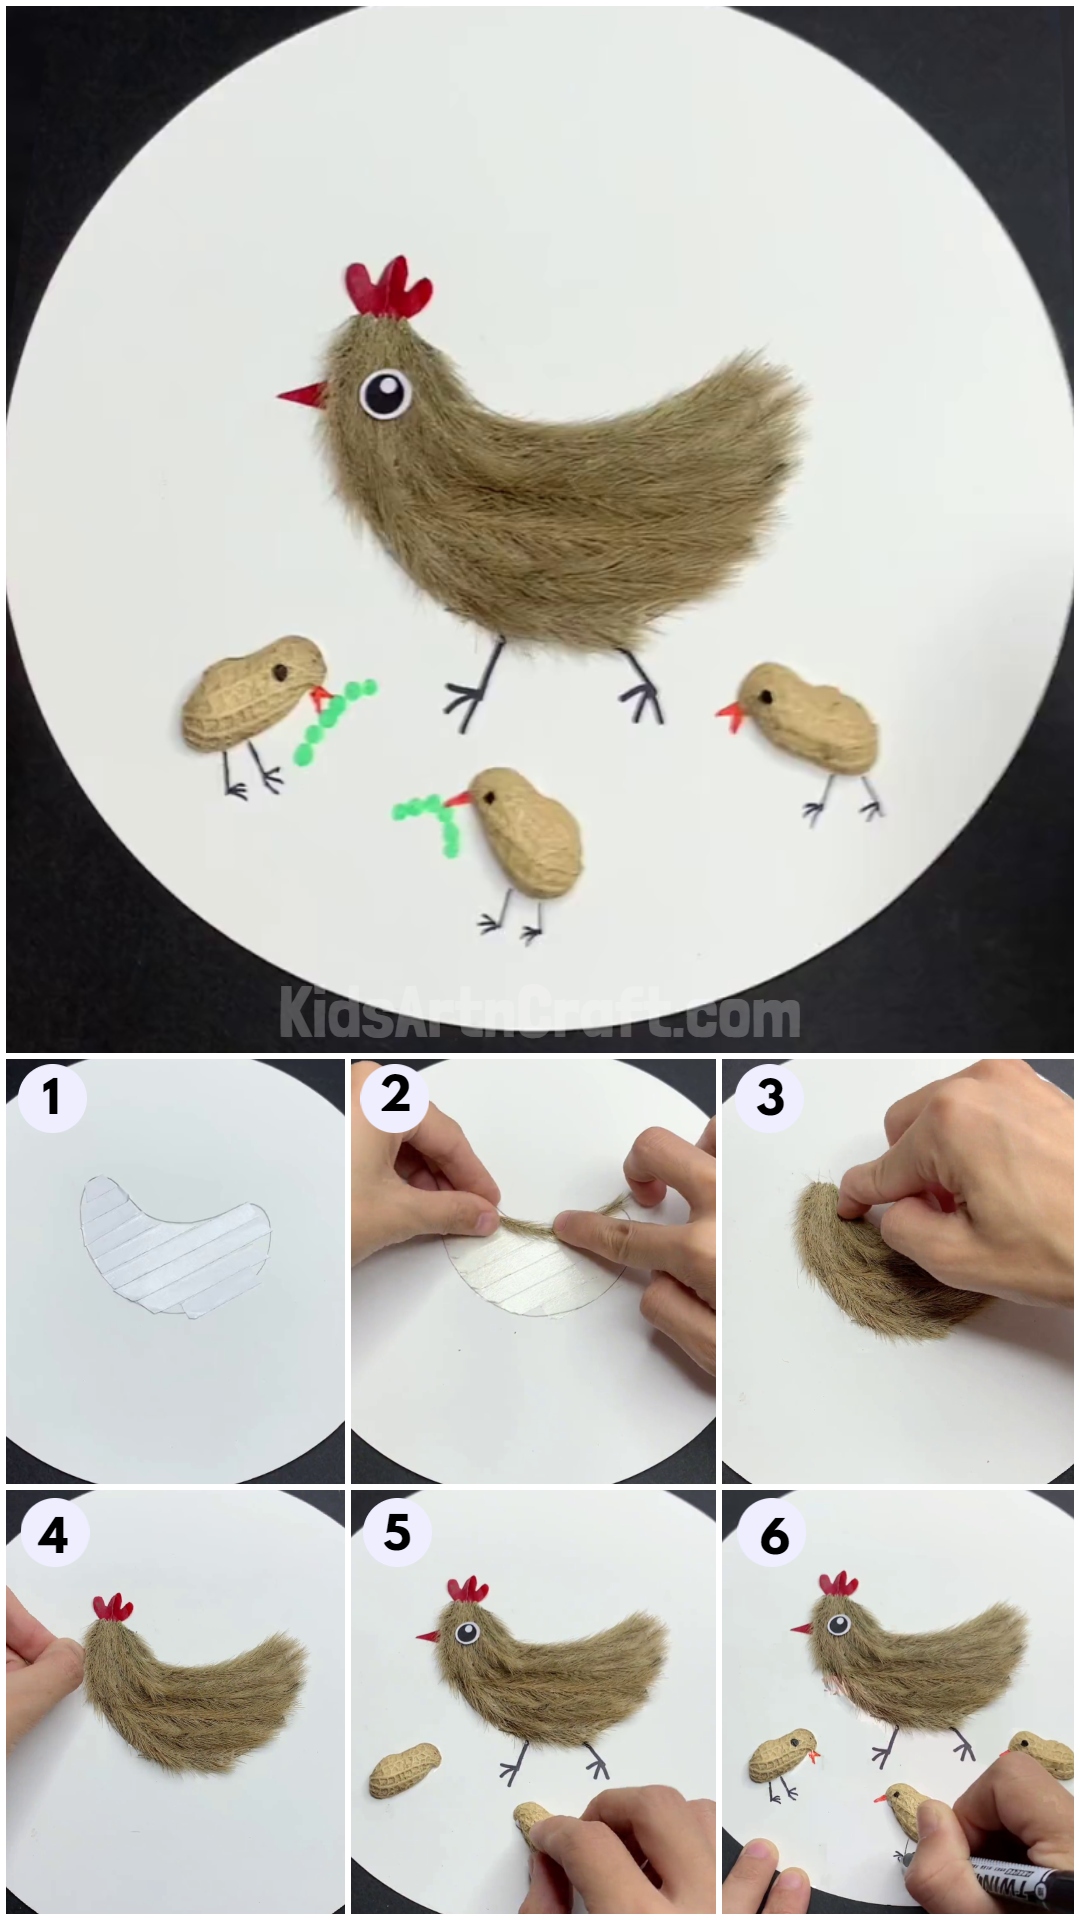 DIY Step by Step Chicken Craft Tutorial